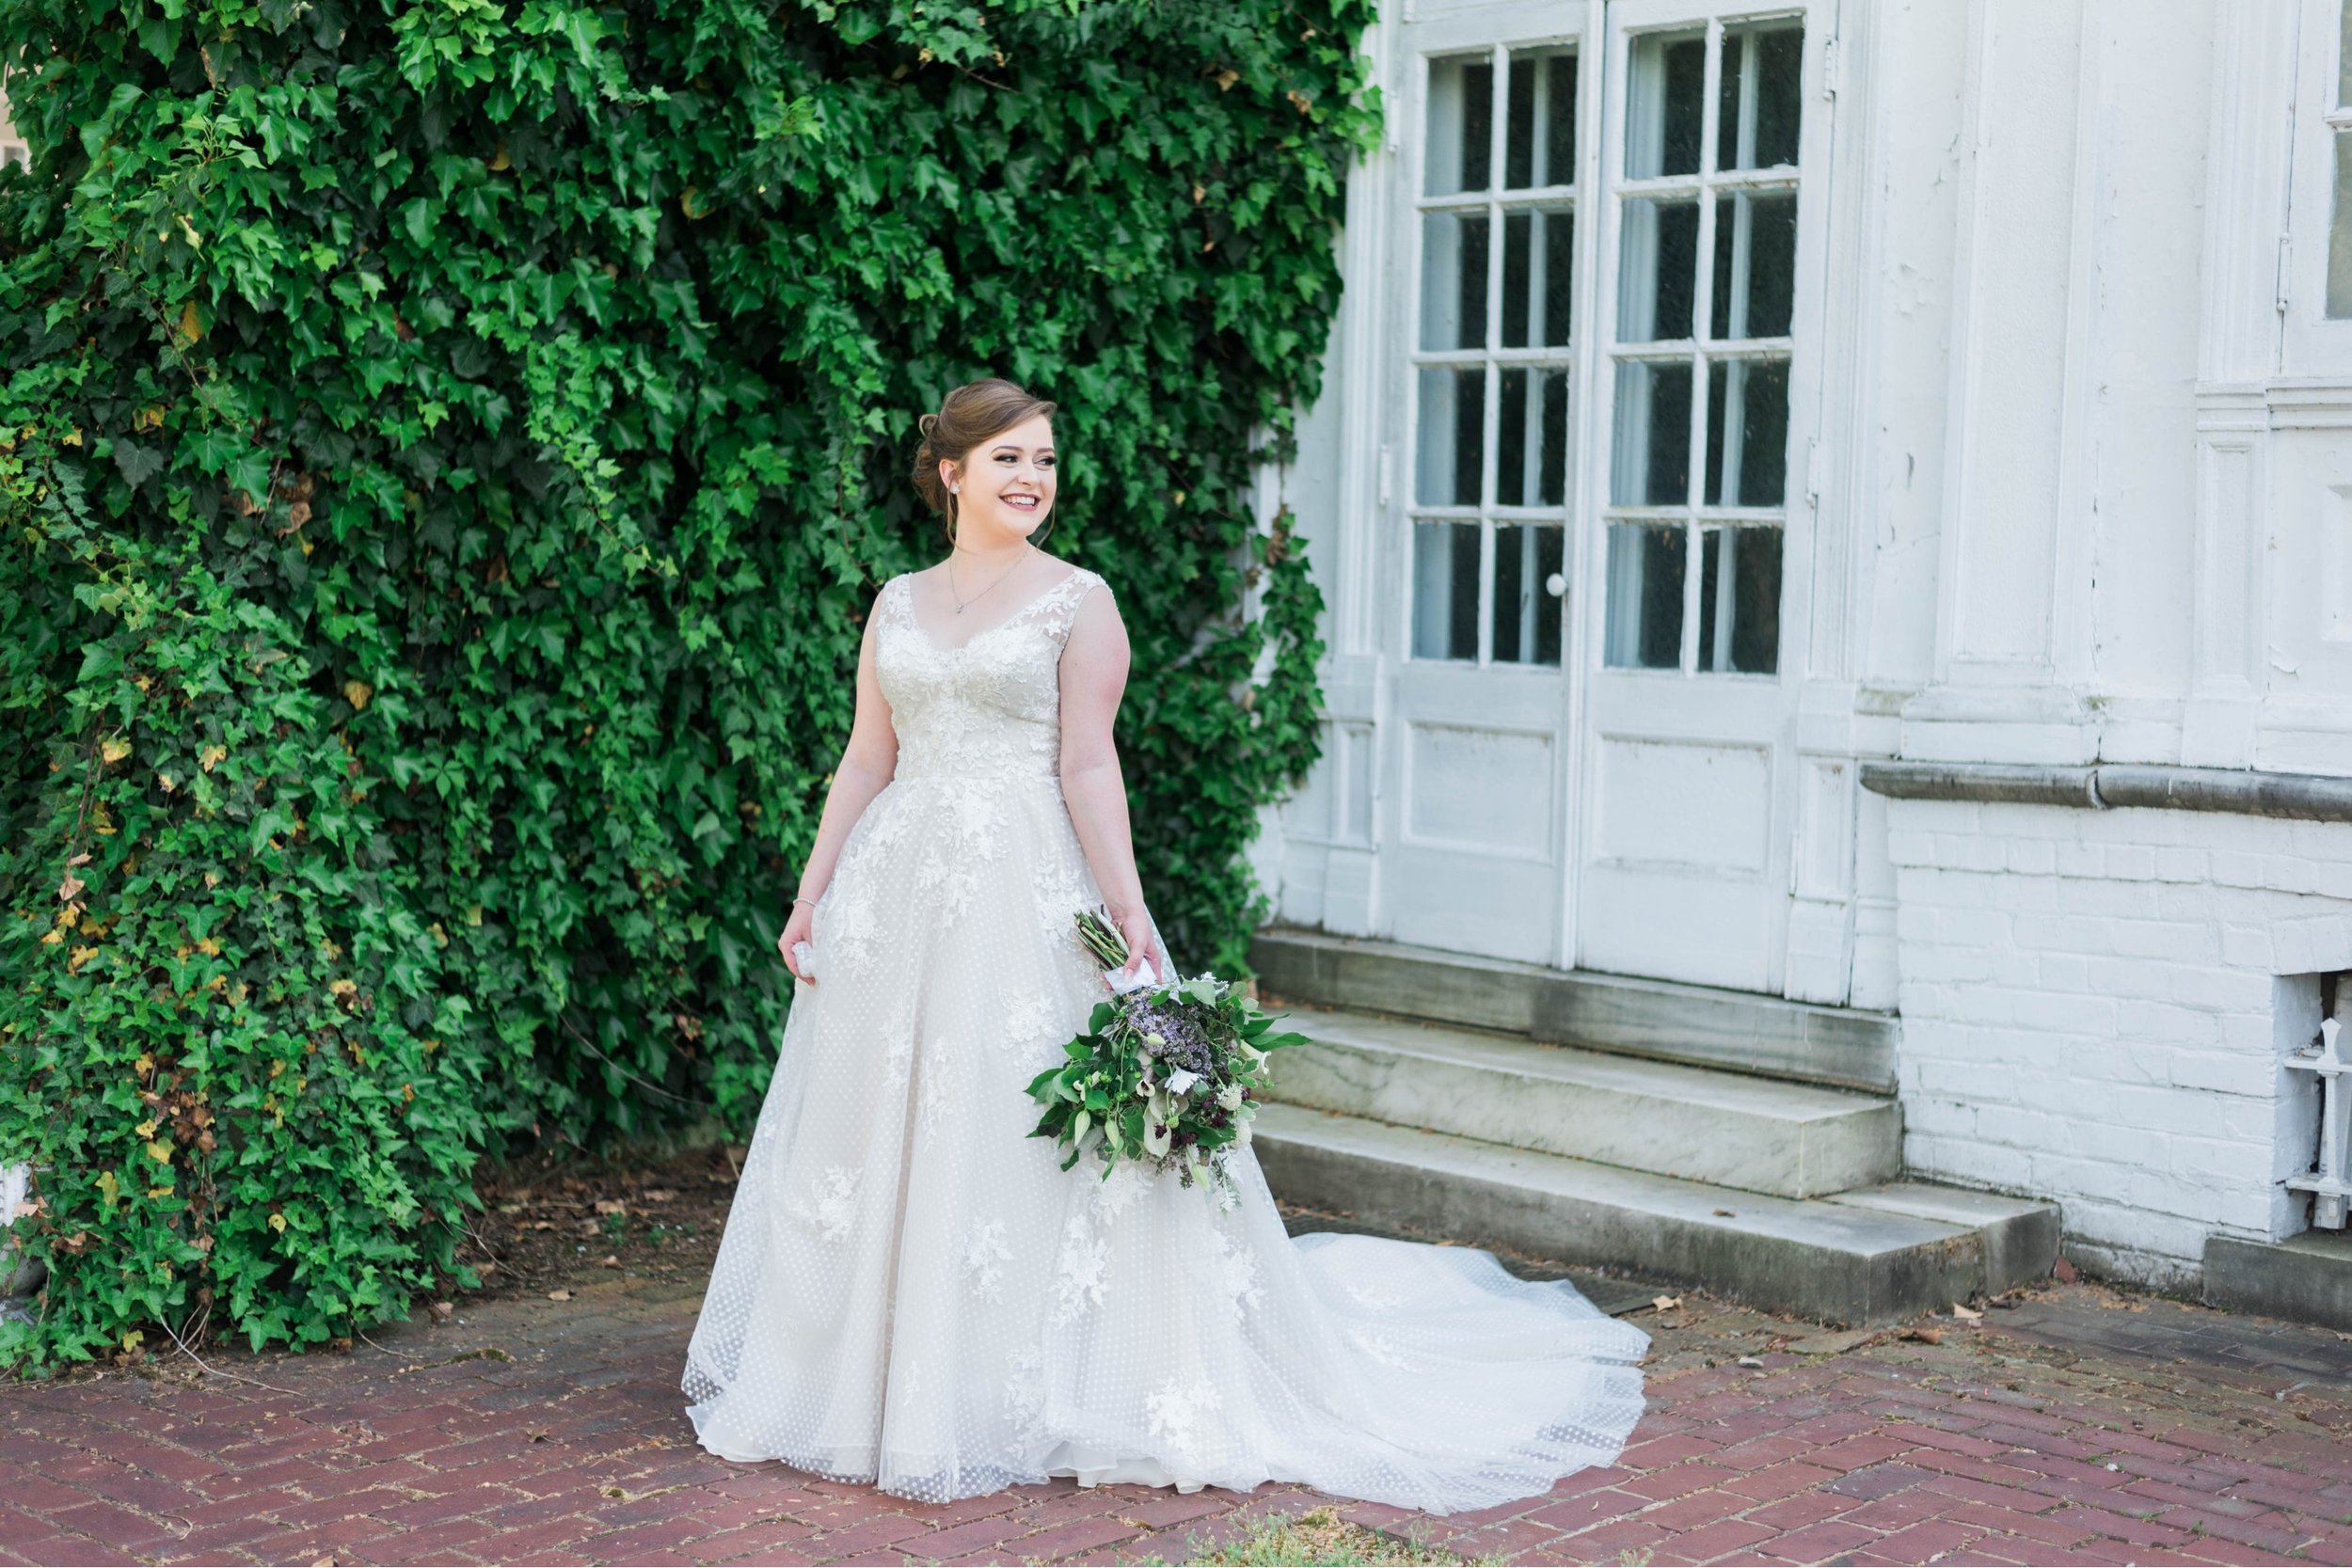 Jillian+Abi_OakridgeEstate_Wedding_VirginiaWeddingPhotographer_SpringWedding 34.jpg